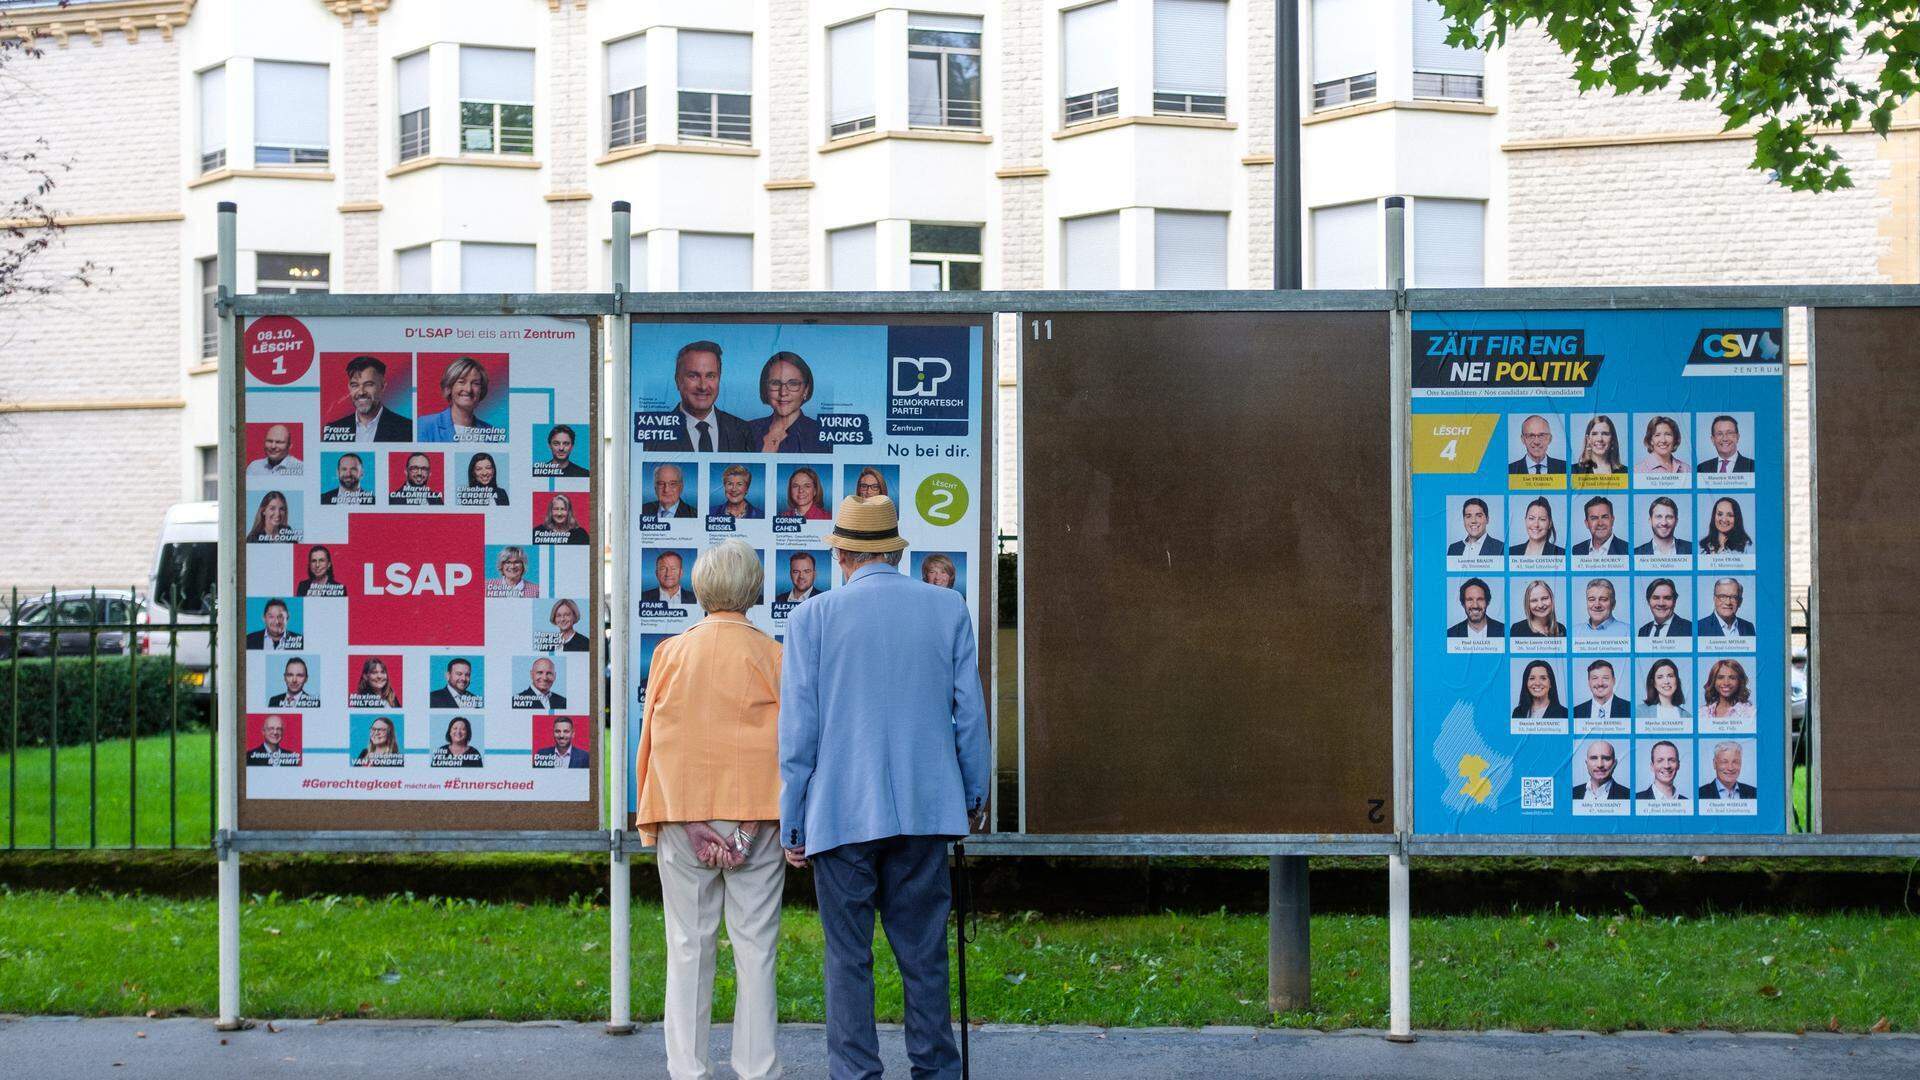 Wer wird nach den Parlamentswahlen in Luxemburg regieren? Diese Frage entscheidet sich nach dem 8. Oktober.